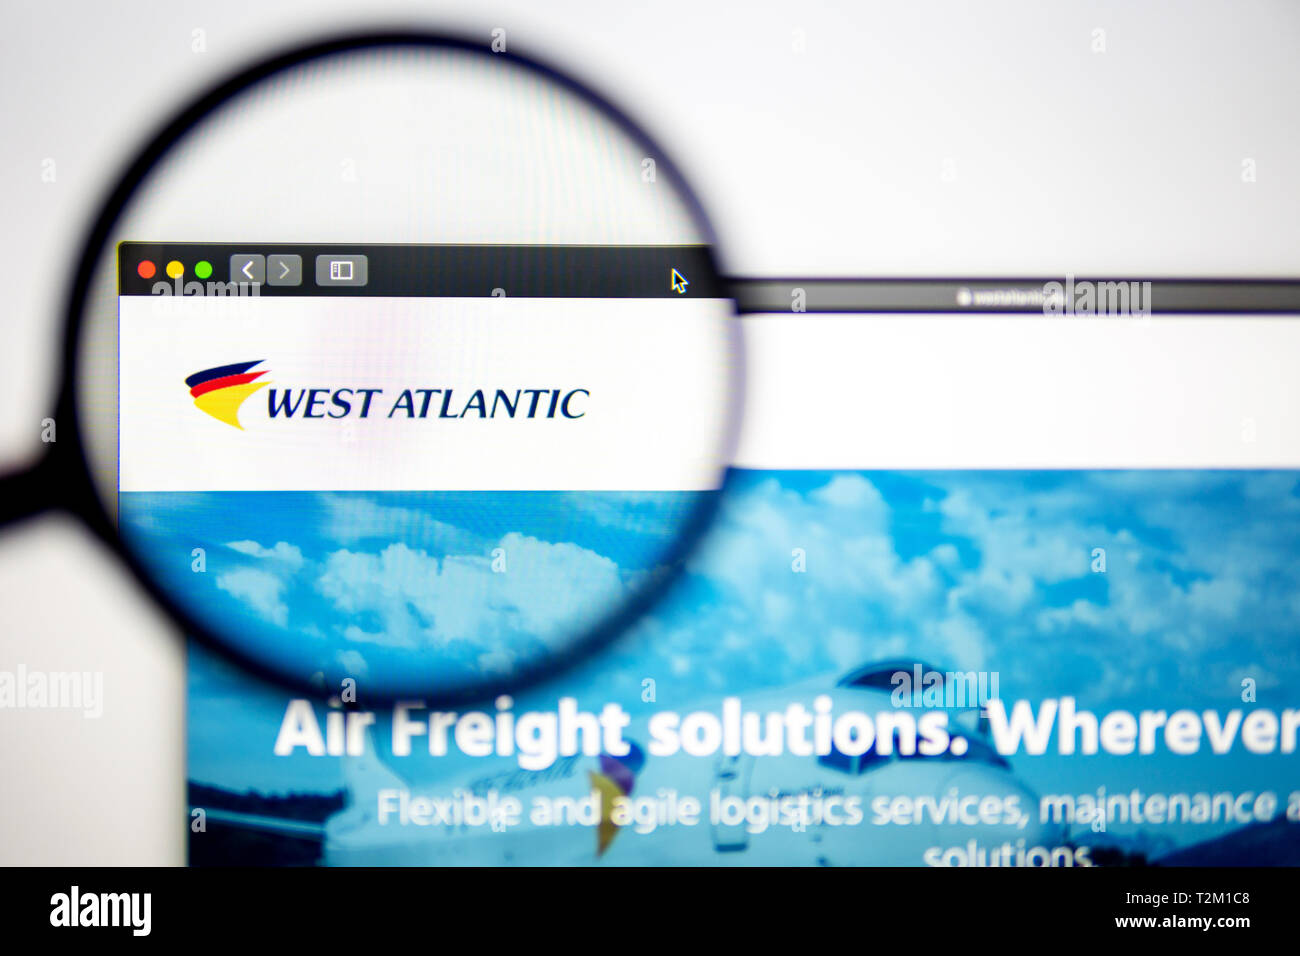 Luftfahrtunternehmen West Atlantic Homepage. West Atlantic Logo sichtbar durch ein Vergrößerungsglas. Сan als Illustration für Medien verwendet werden. Stockfoto